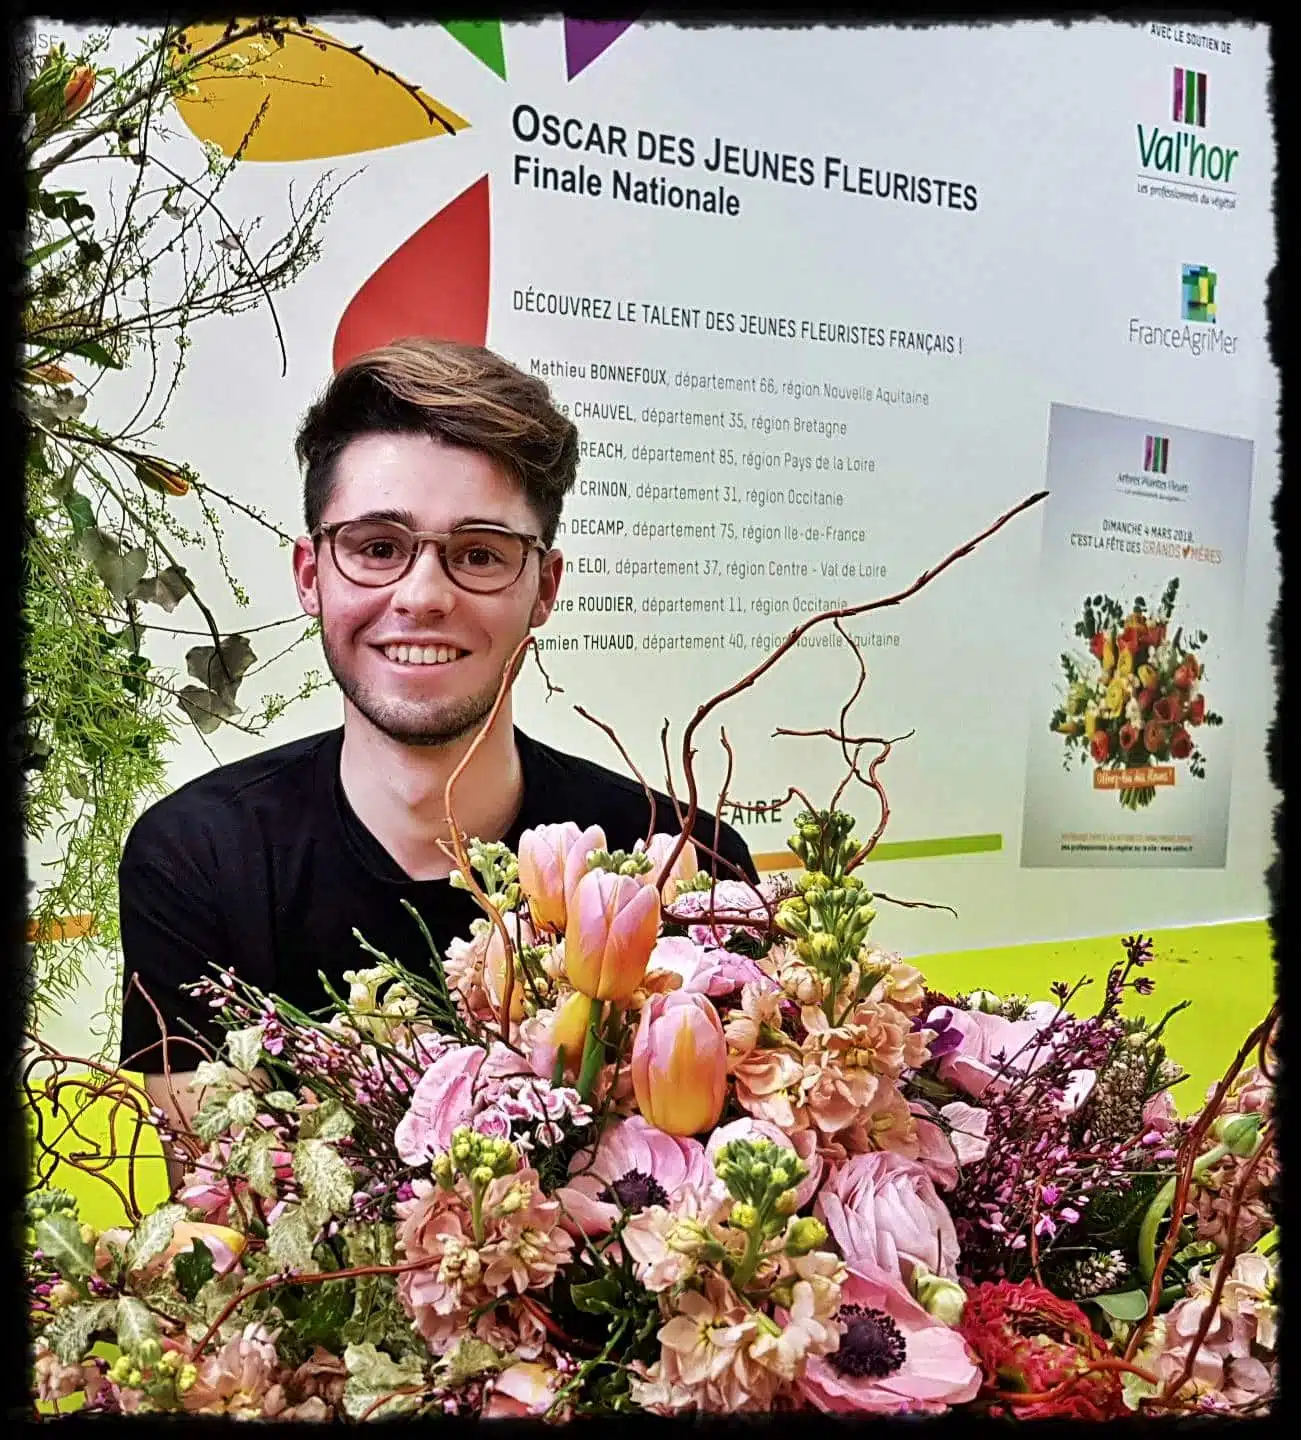 Salon de l’agriculture 2018 – Damien Thuaud – Oscar des Jeunes Fleuristes